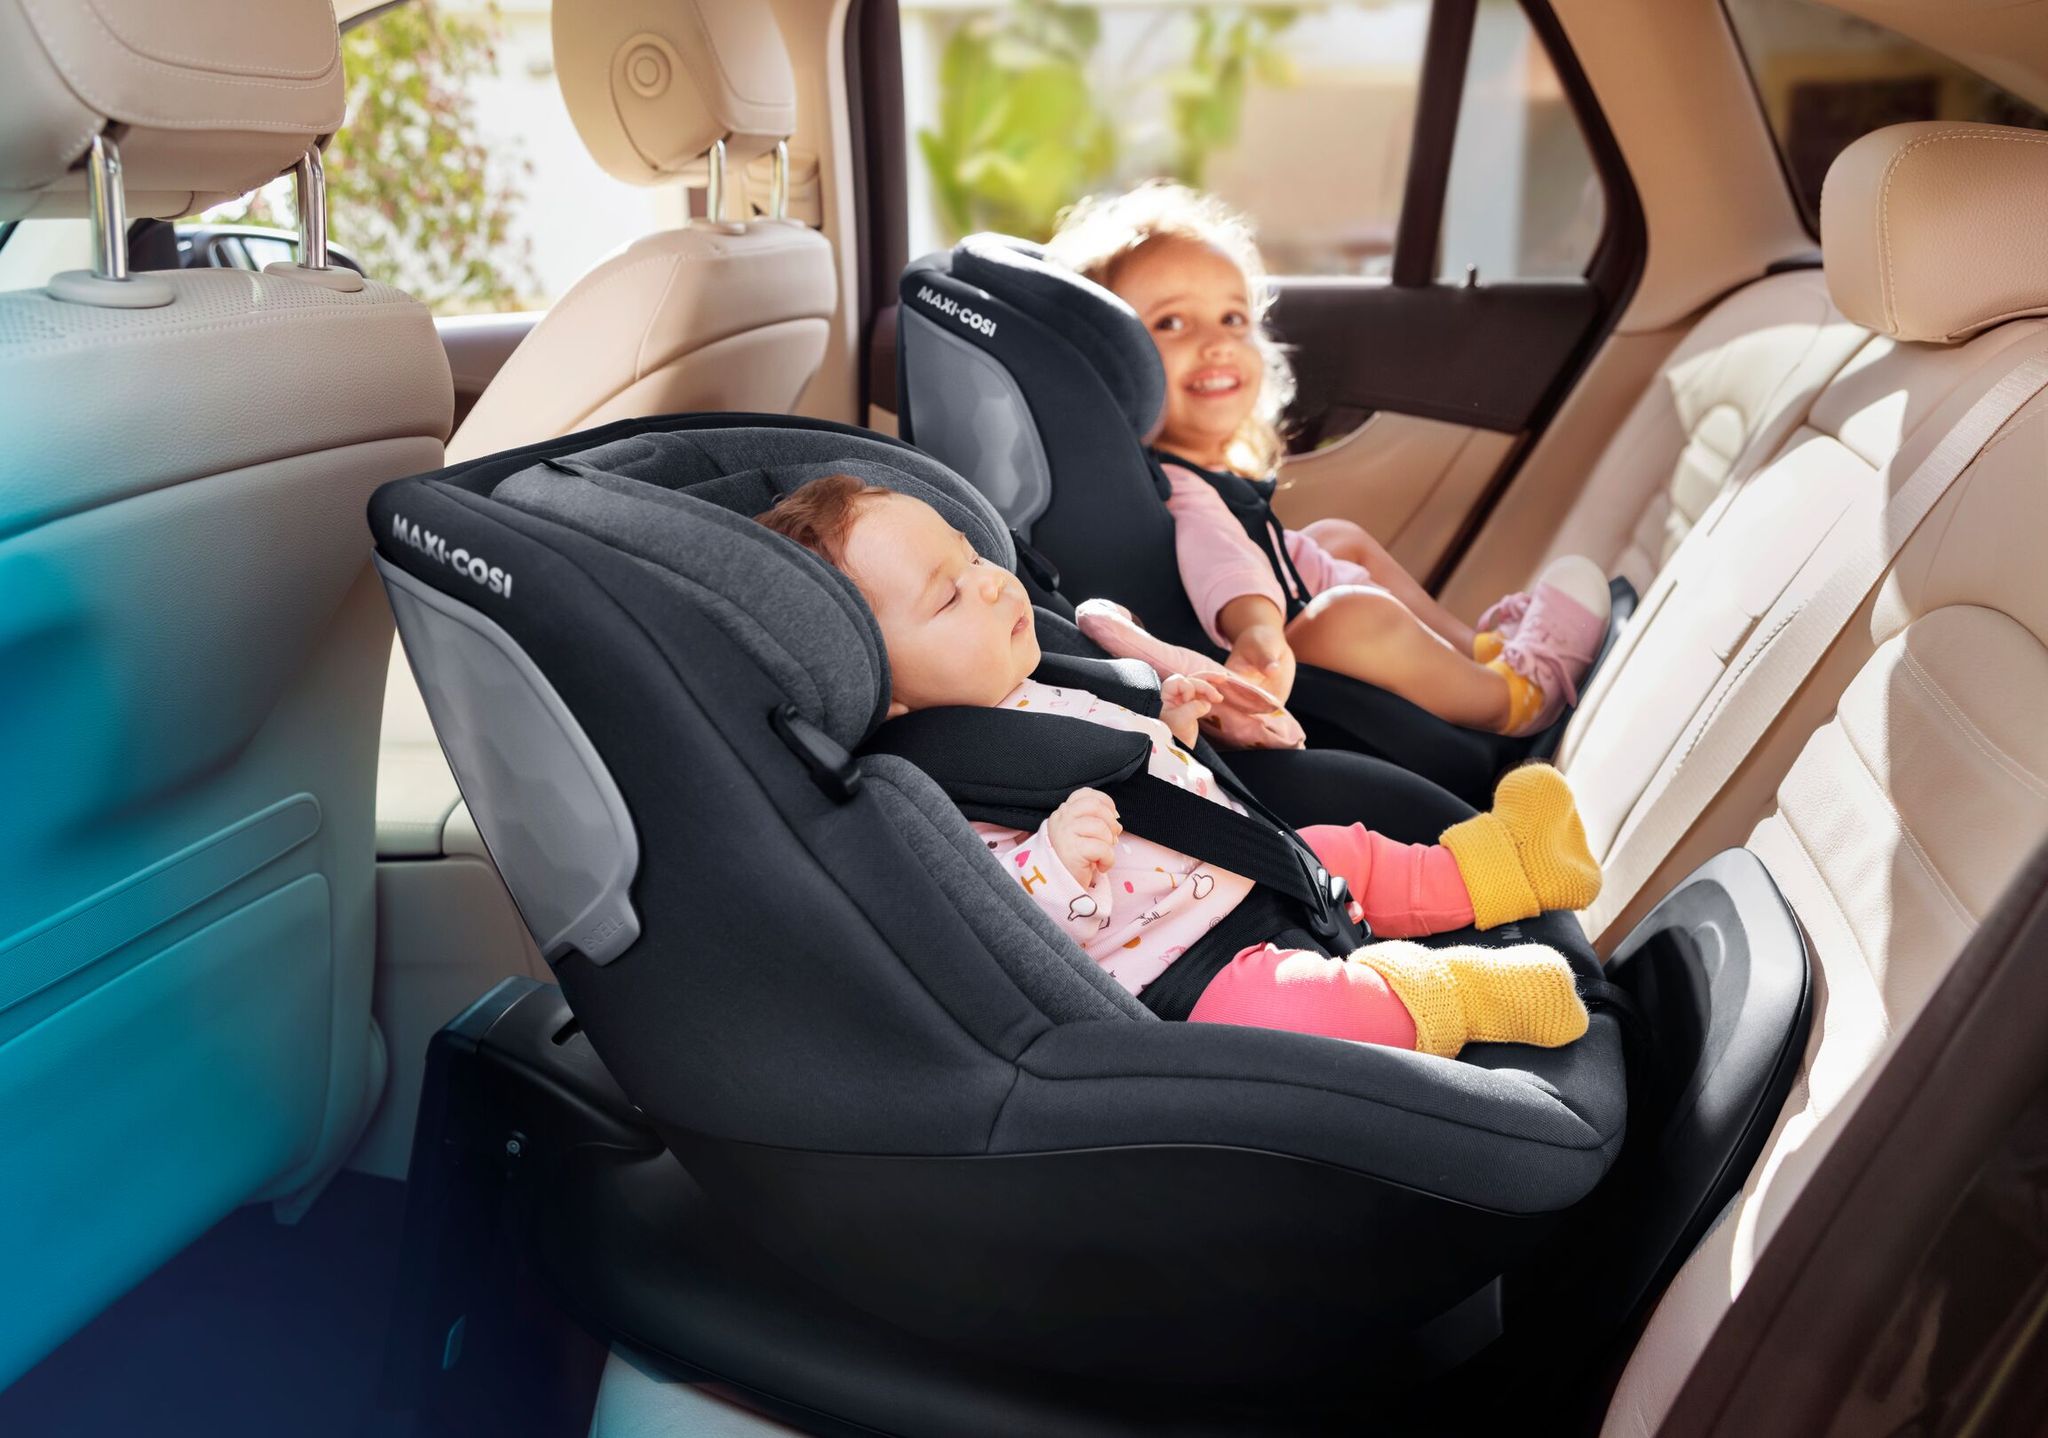 Sillas de Coche - Seguridad del bebé en viajes en automóvil